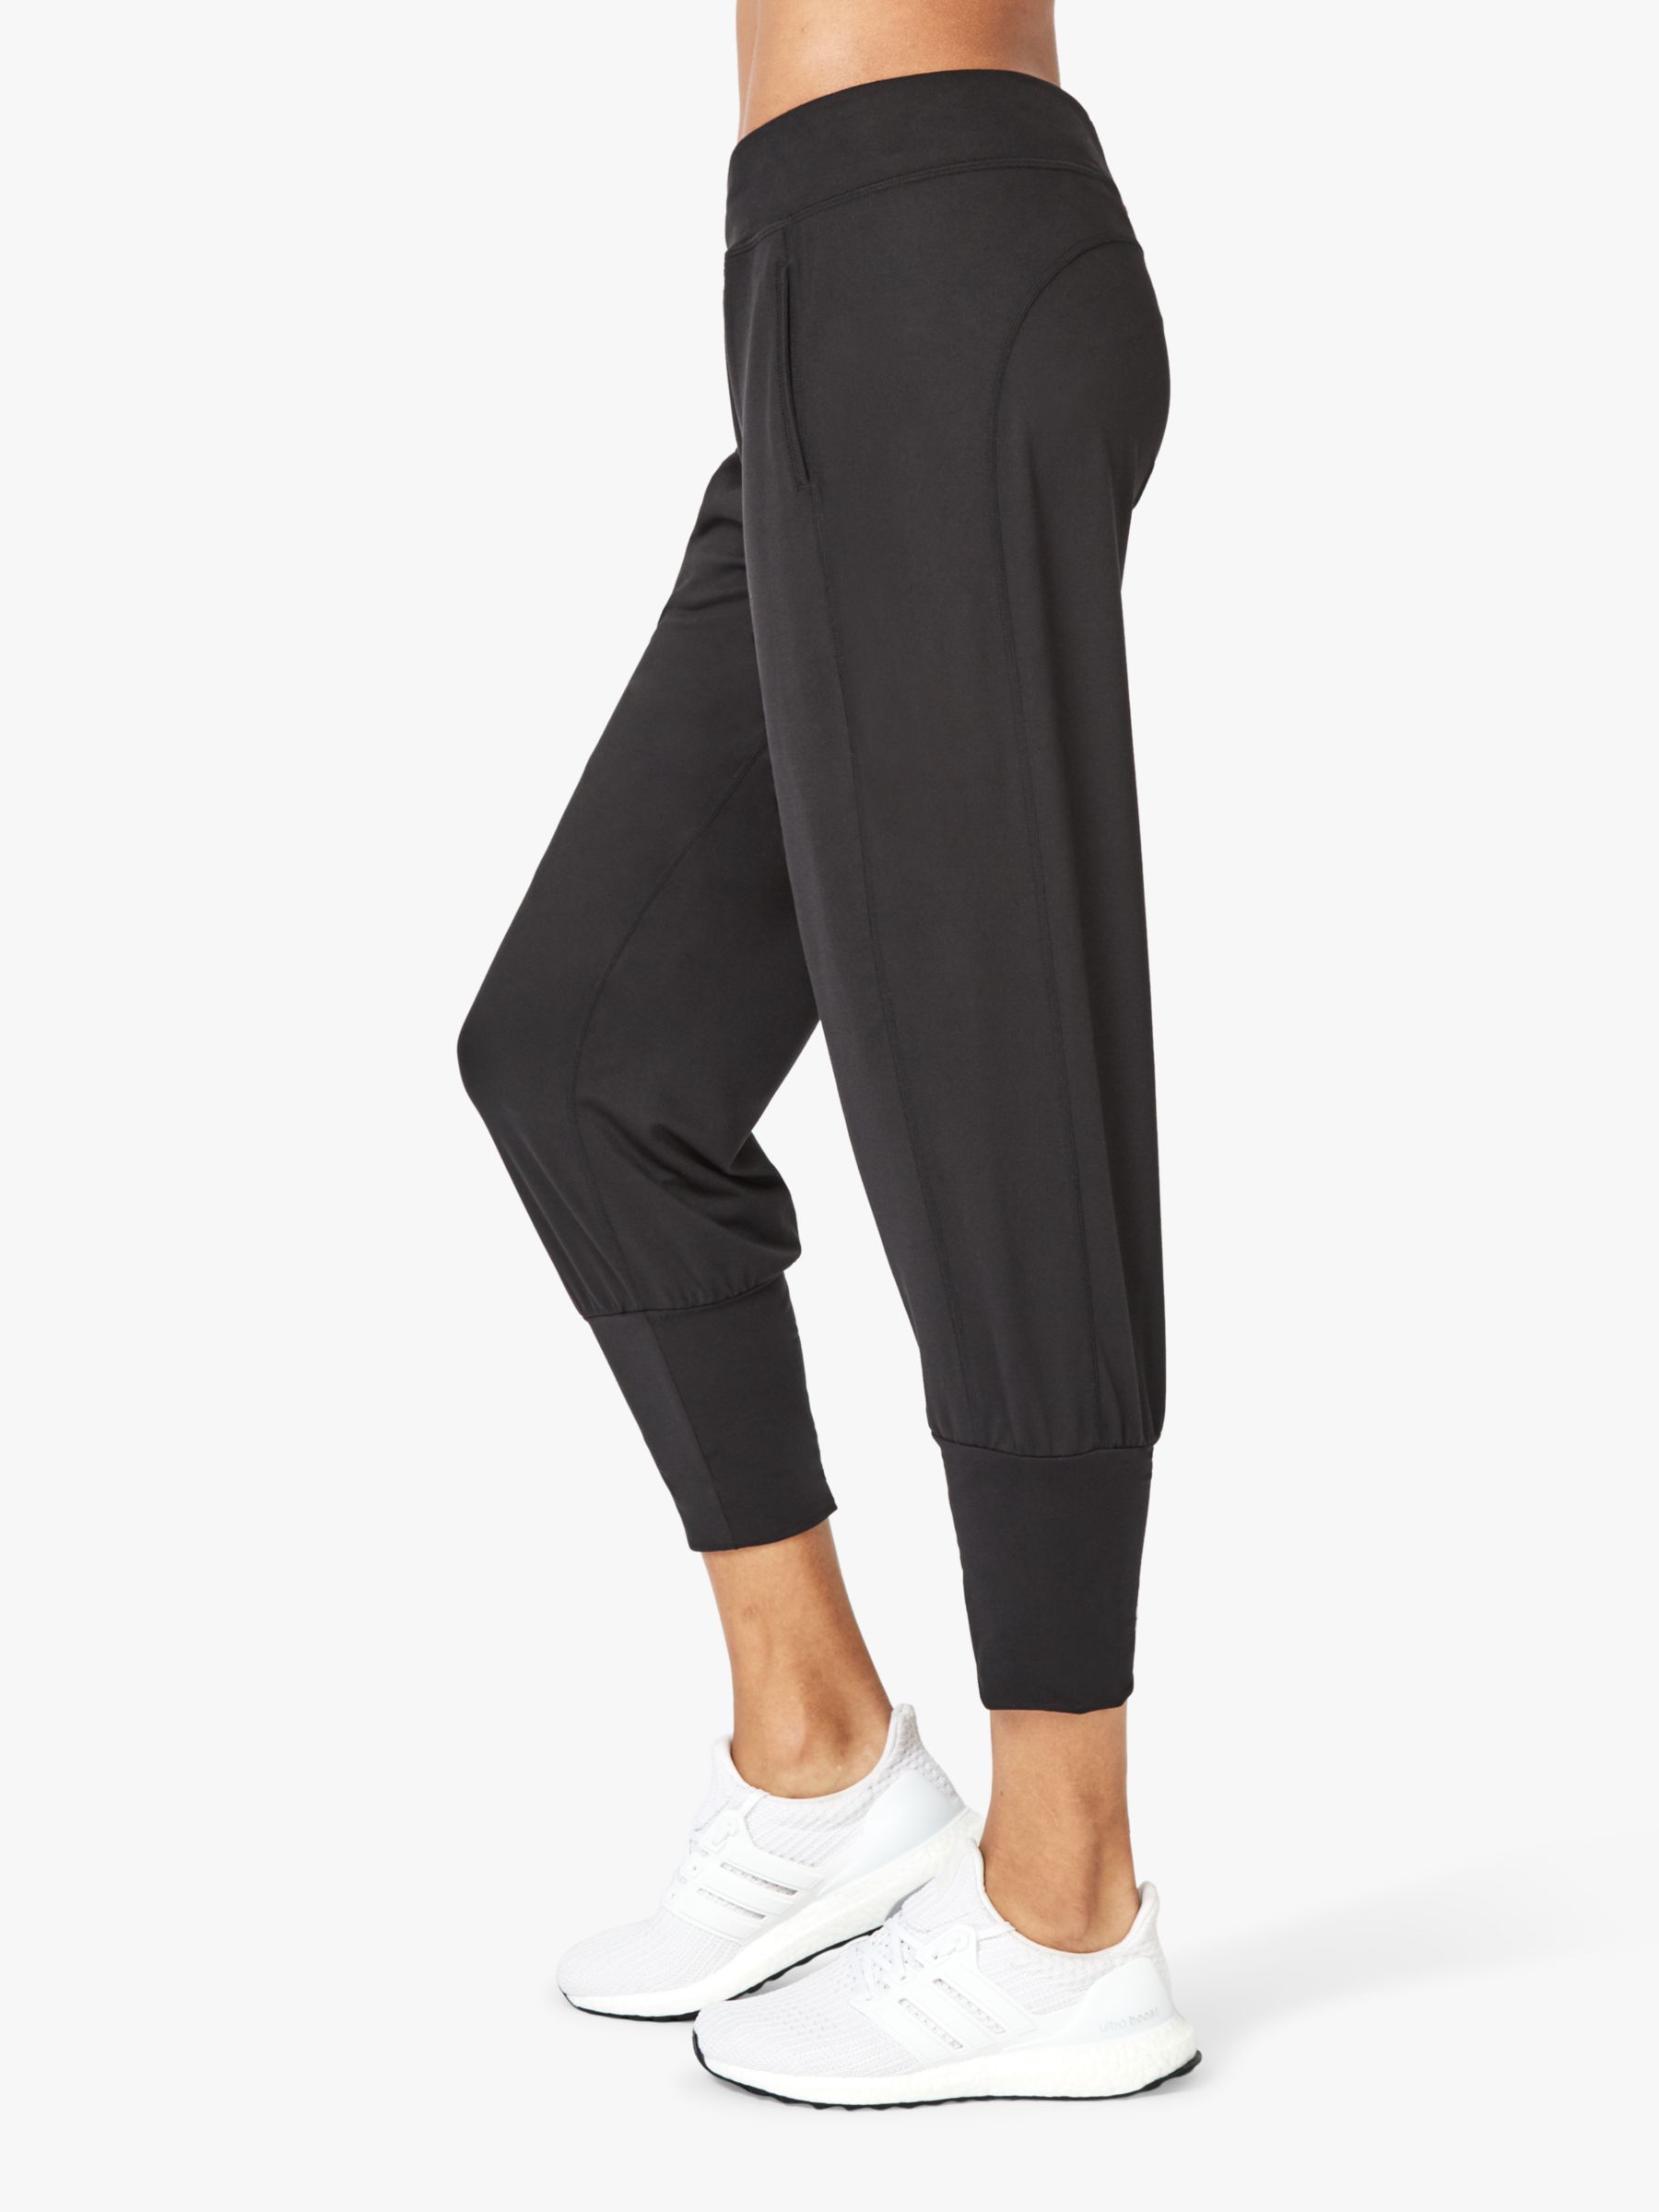 Sweaty Betty Gary Cropped Yoga Pants, Black